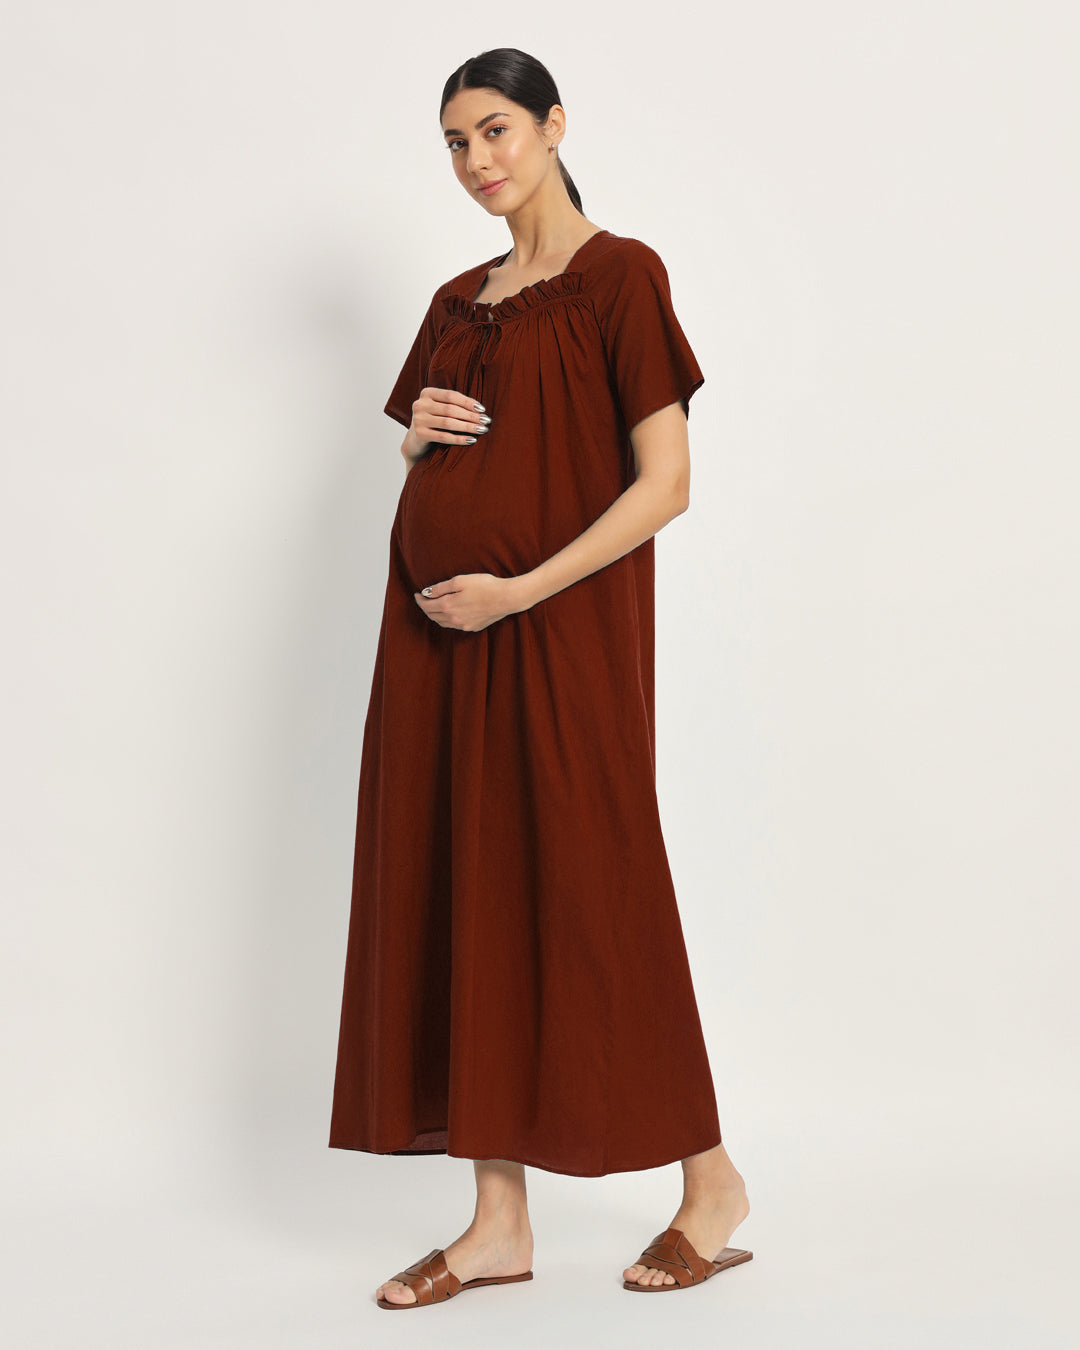 Combo: Iris Pink & Russet Red Nurture N' Shine Maternity & Nursing Dress